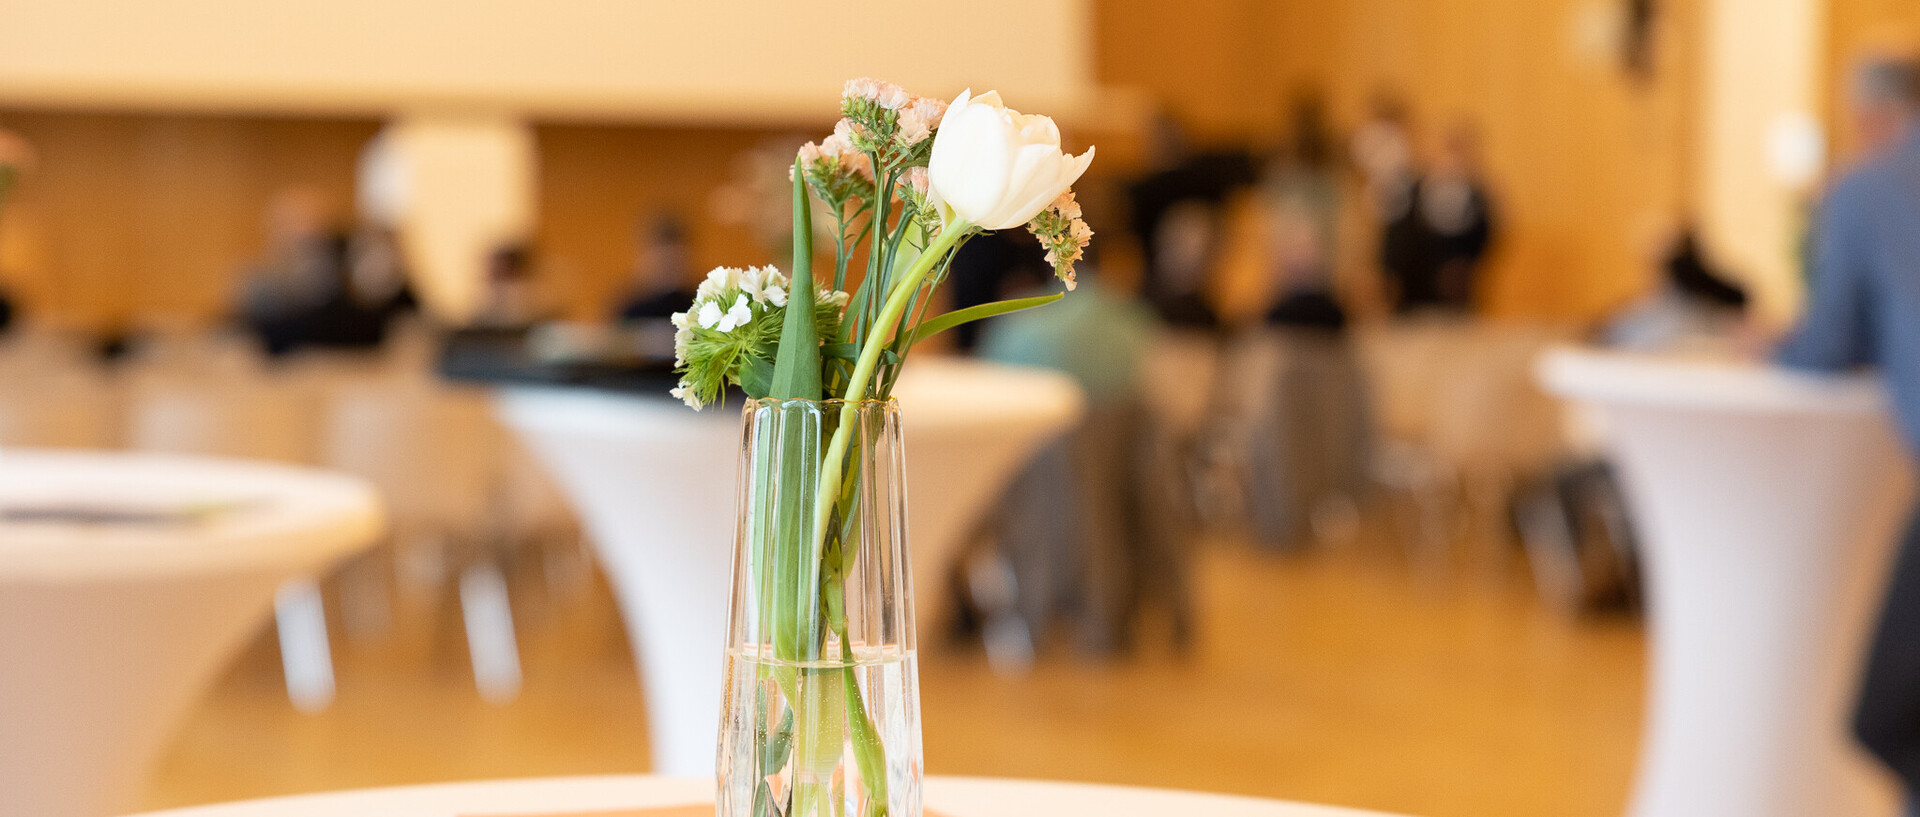 Blumenstrauß in einer Vase auf einem Tisch. Im Hintergrund weiße Stehtische und Personen.